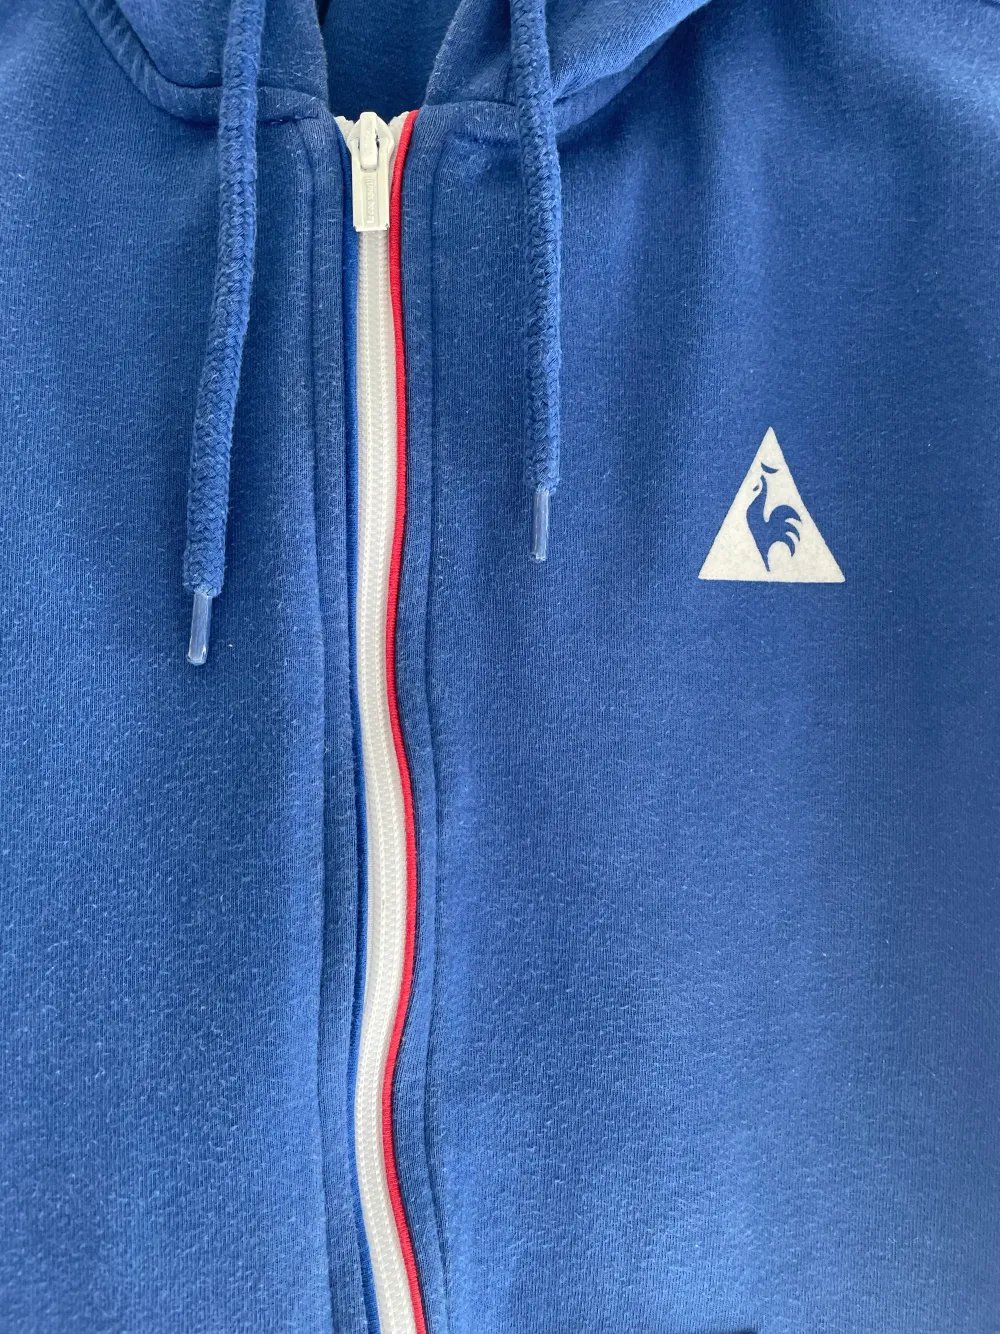 Storlek S/M blå tröja med luva franska flaggan vid zippen syns på bilden de en linje som e röd o en blå ska reppa france ☺️. Hoodies.